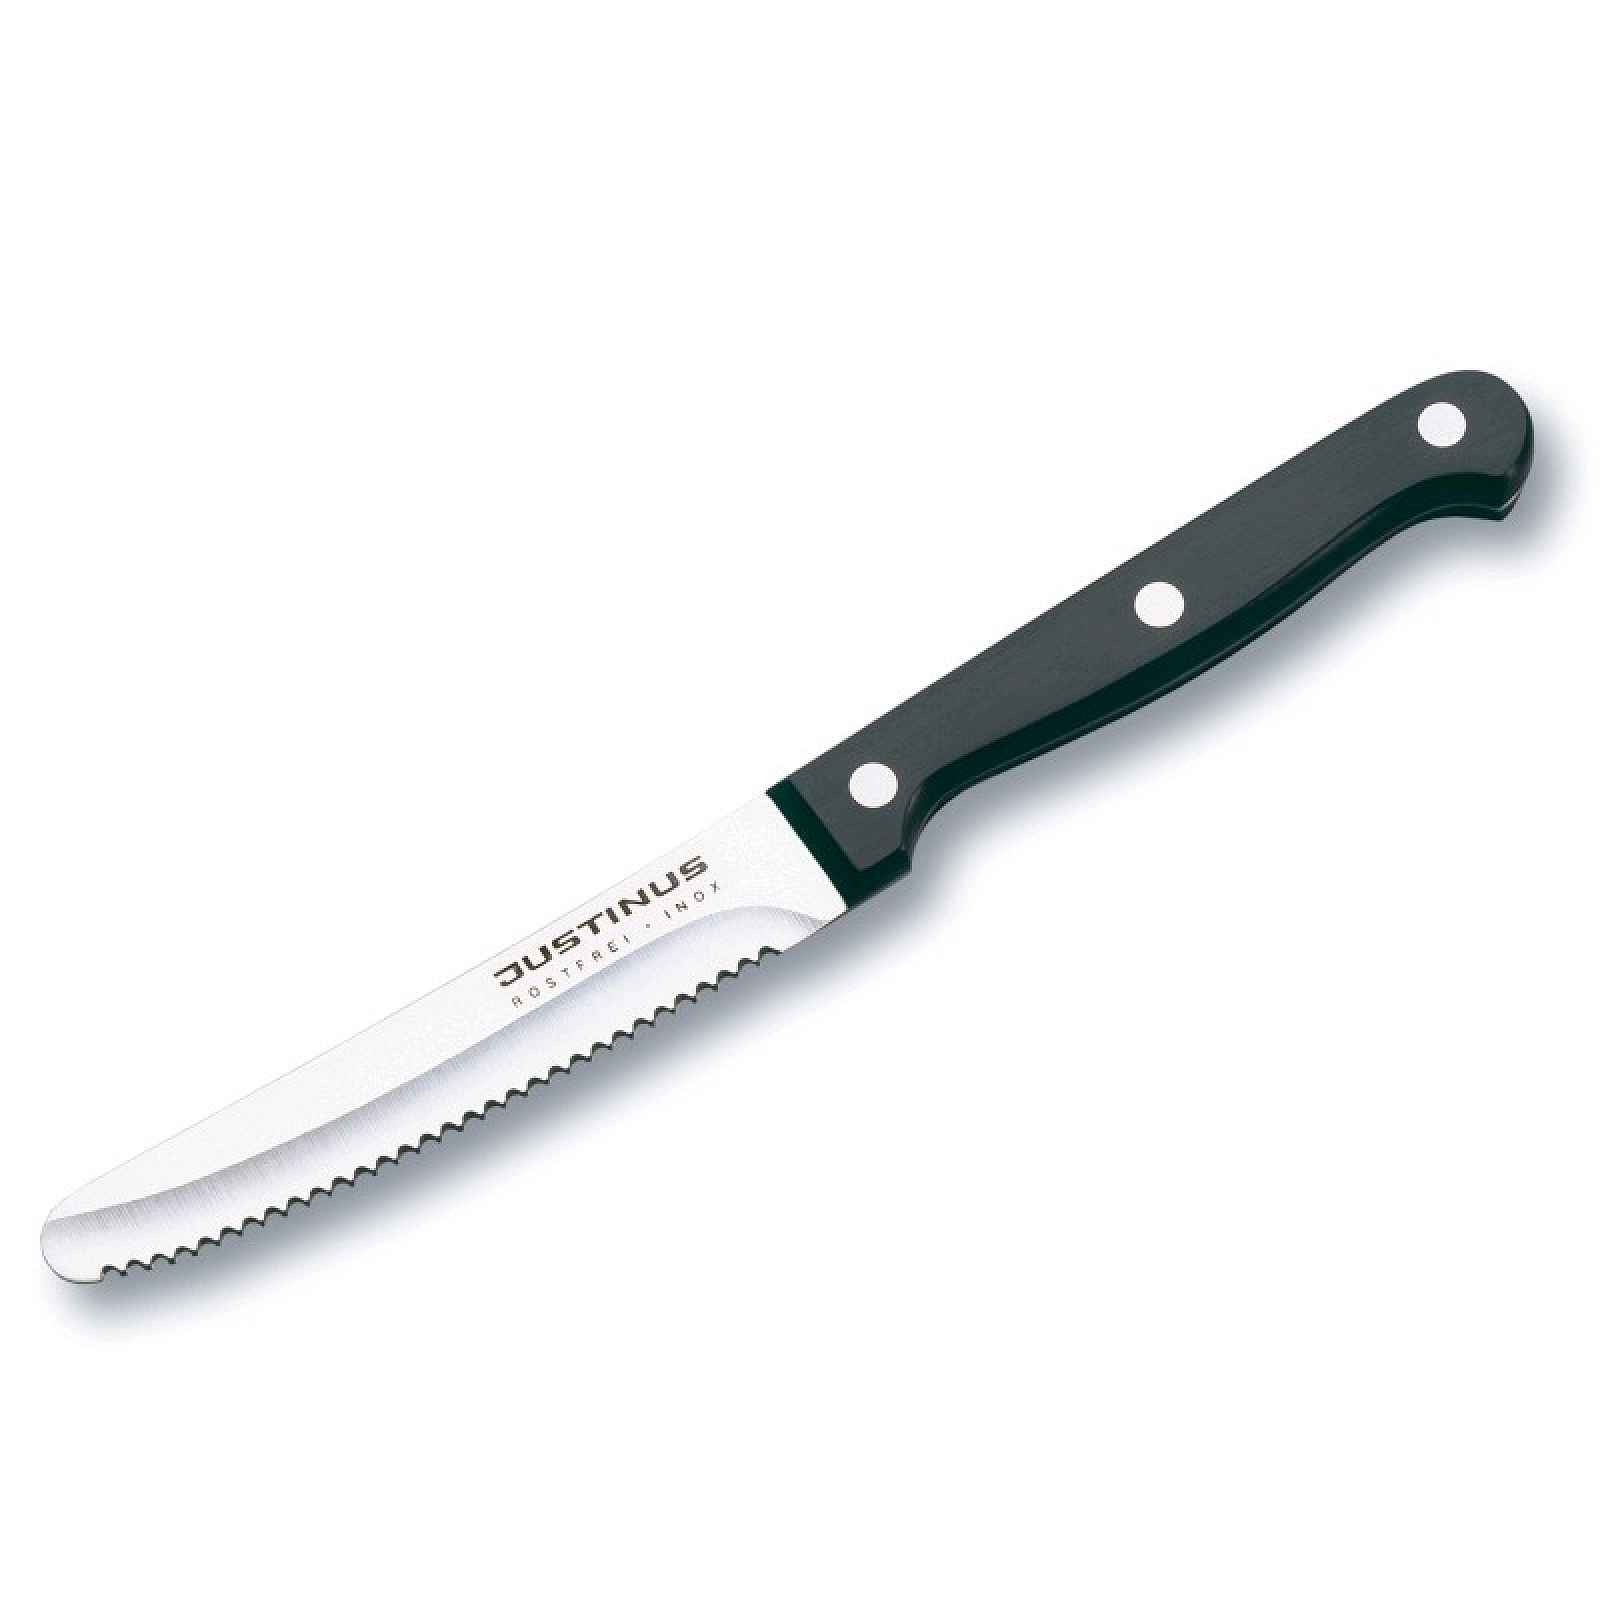 Nůž na pečivo KüchenChef, 11 cm